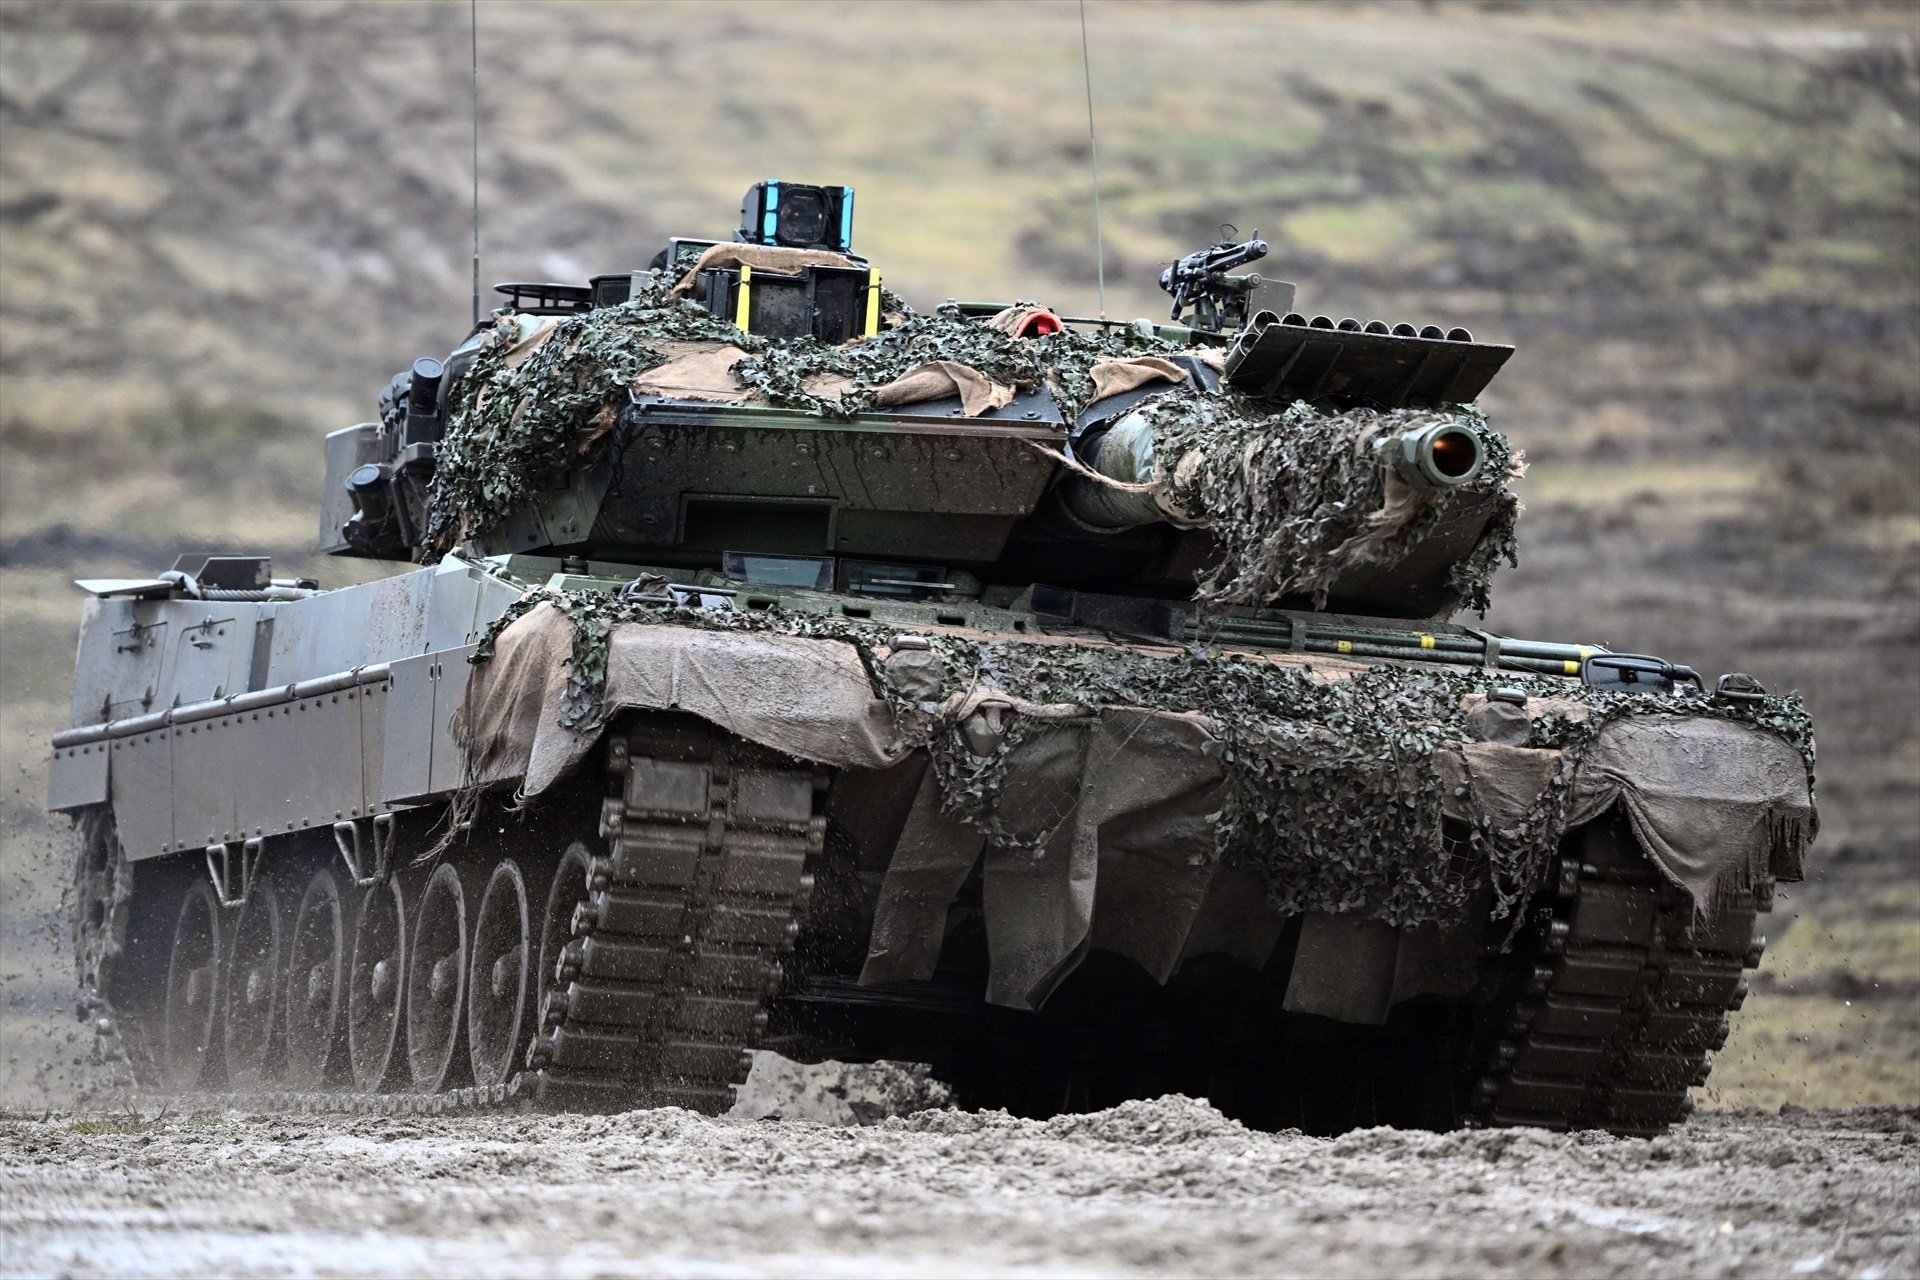 Bruselas defiende pasar a la economía de guerra: quiere producir más munición militar en Europa